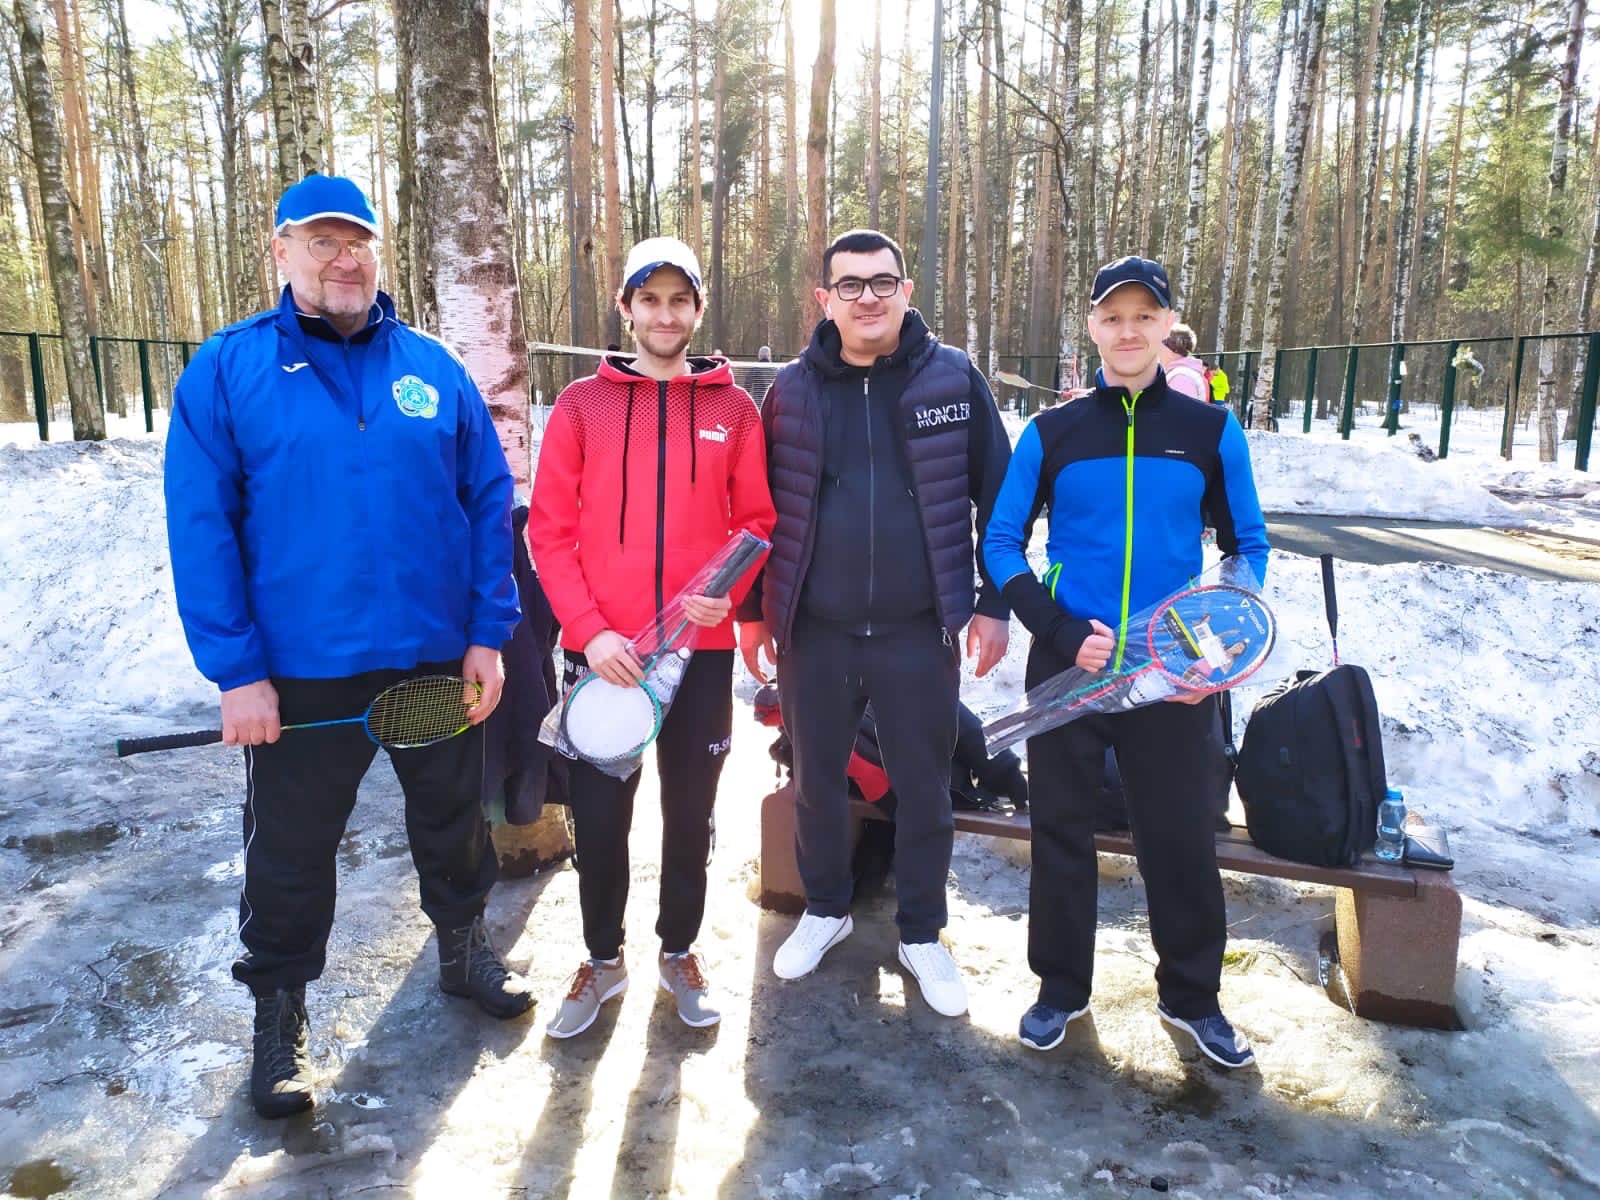 Глава Администрации МО Светлановское Сергей Кузьмин вручает участникам соревнований по бадминтону спортивный инвентарь. На фоне деревьев и снега стоят 4 человека в спортивных костюмах.